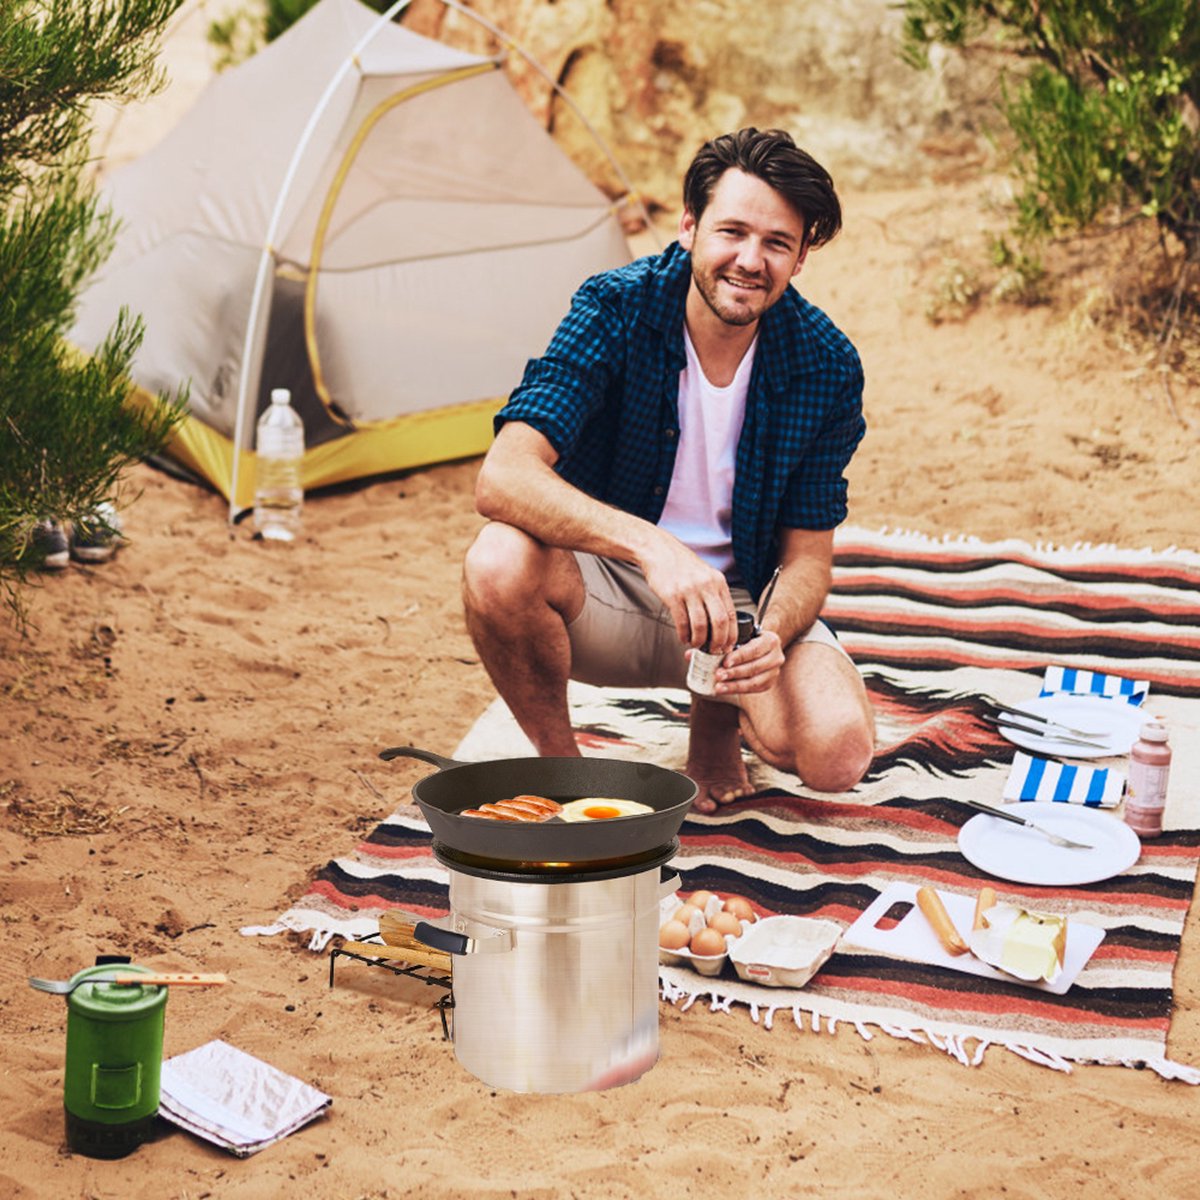 Charcoal Camping Stove - voor buiten koken - Grill - Picknick - BBQ - Rocket Stove - Houtgestookt - met draagtas